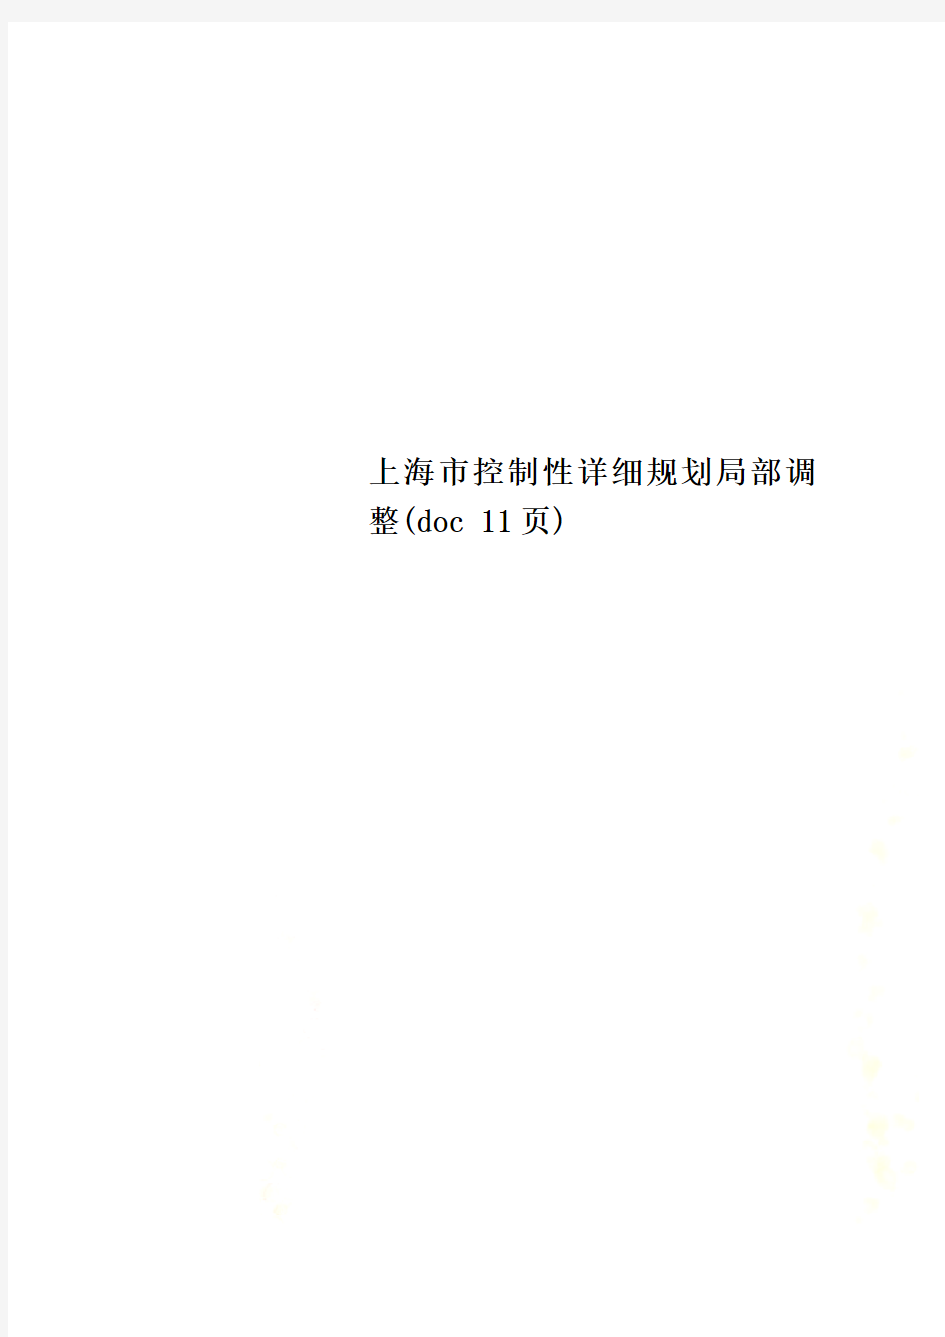 上海市控制性详细规划局部调整(doc 11页)